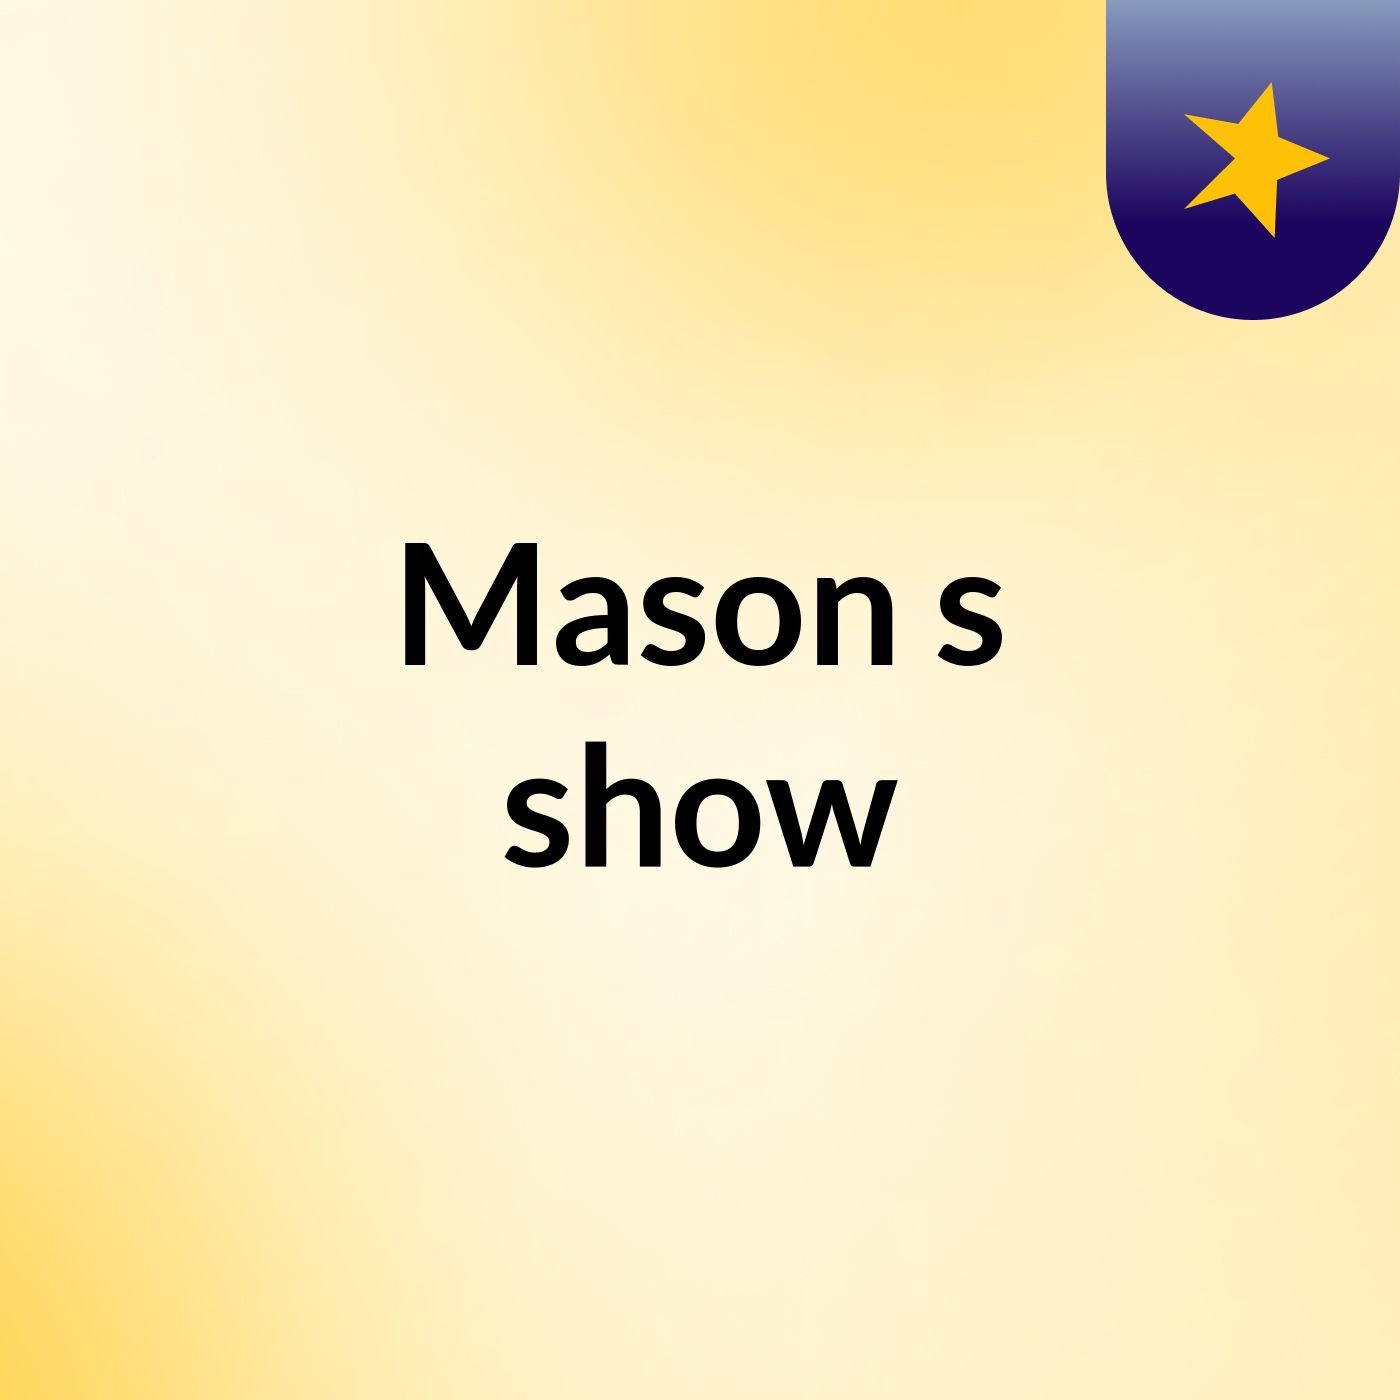 Mason's show